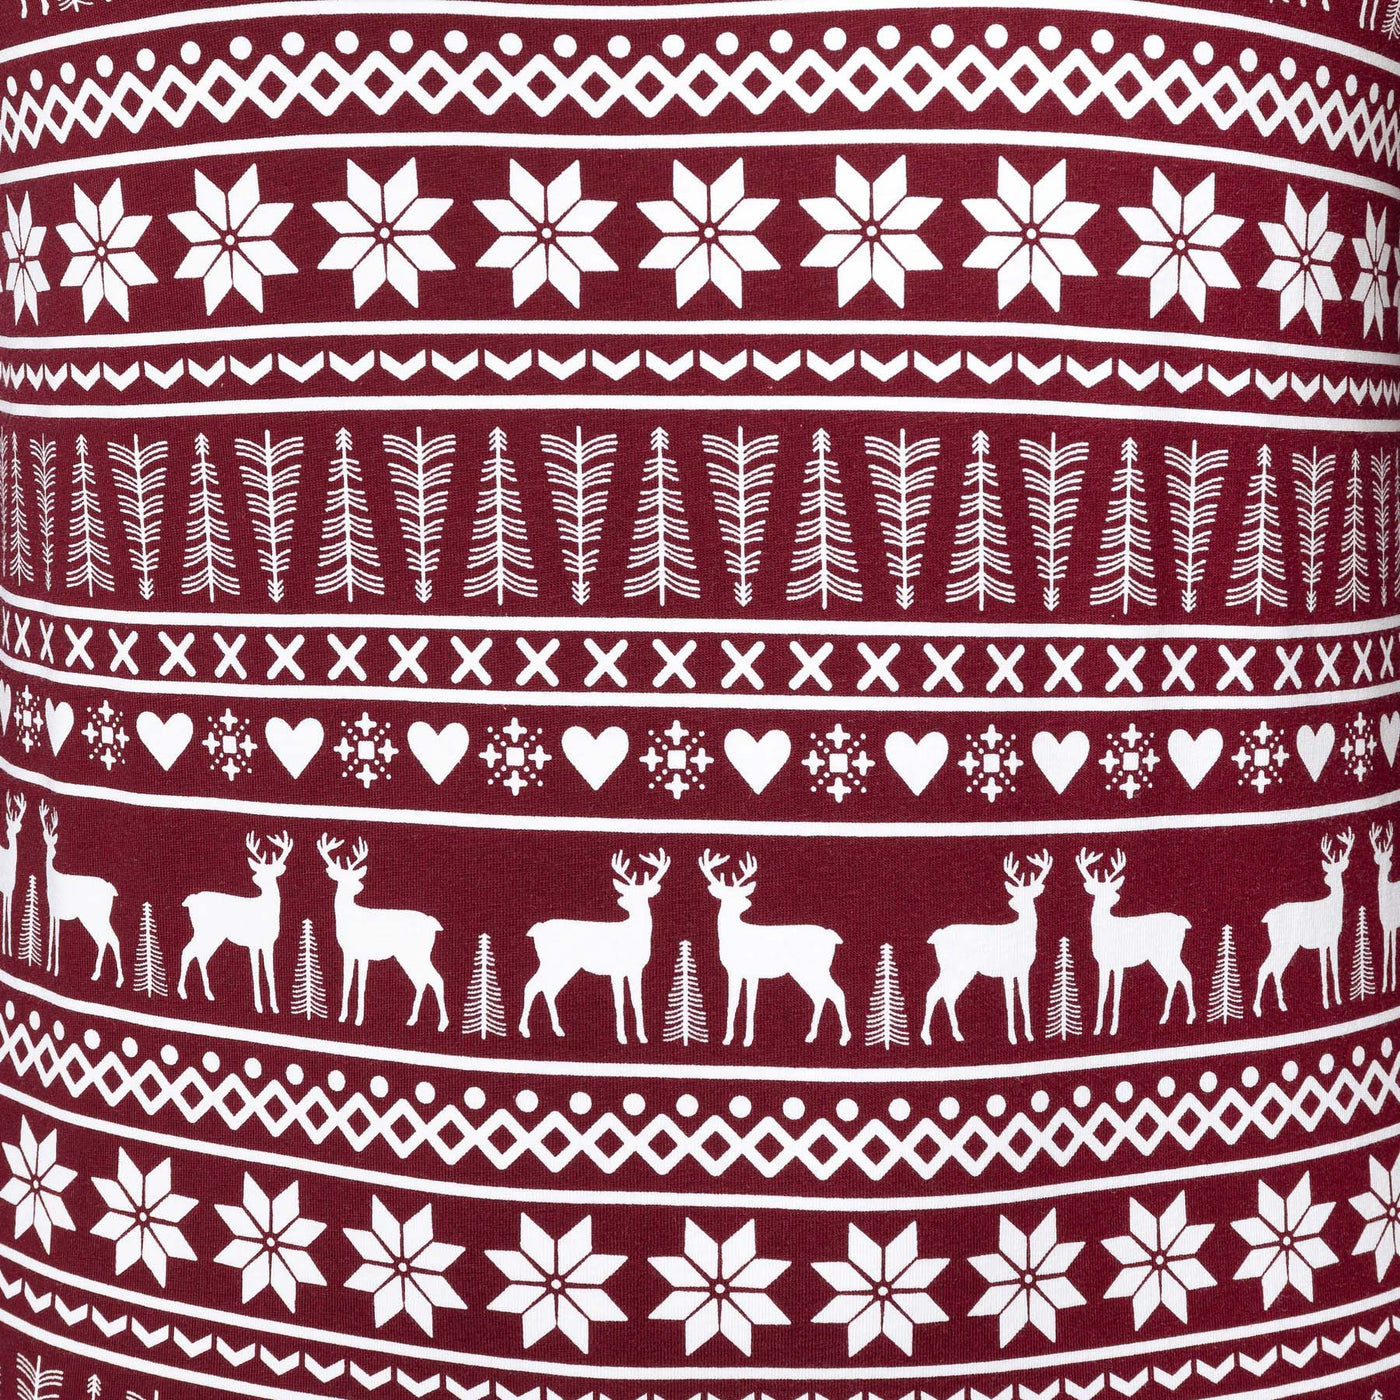 Kids' Burgundy Winter Pattern Pyjamas